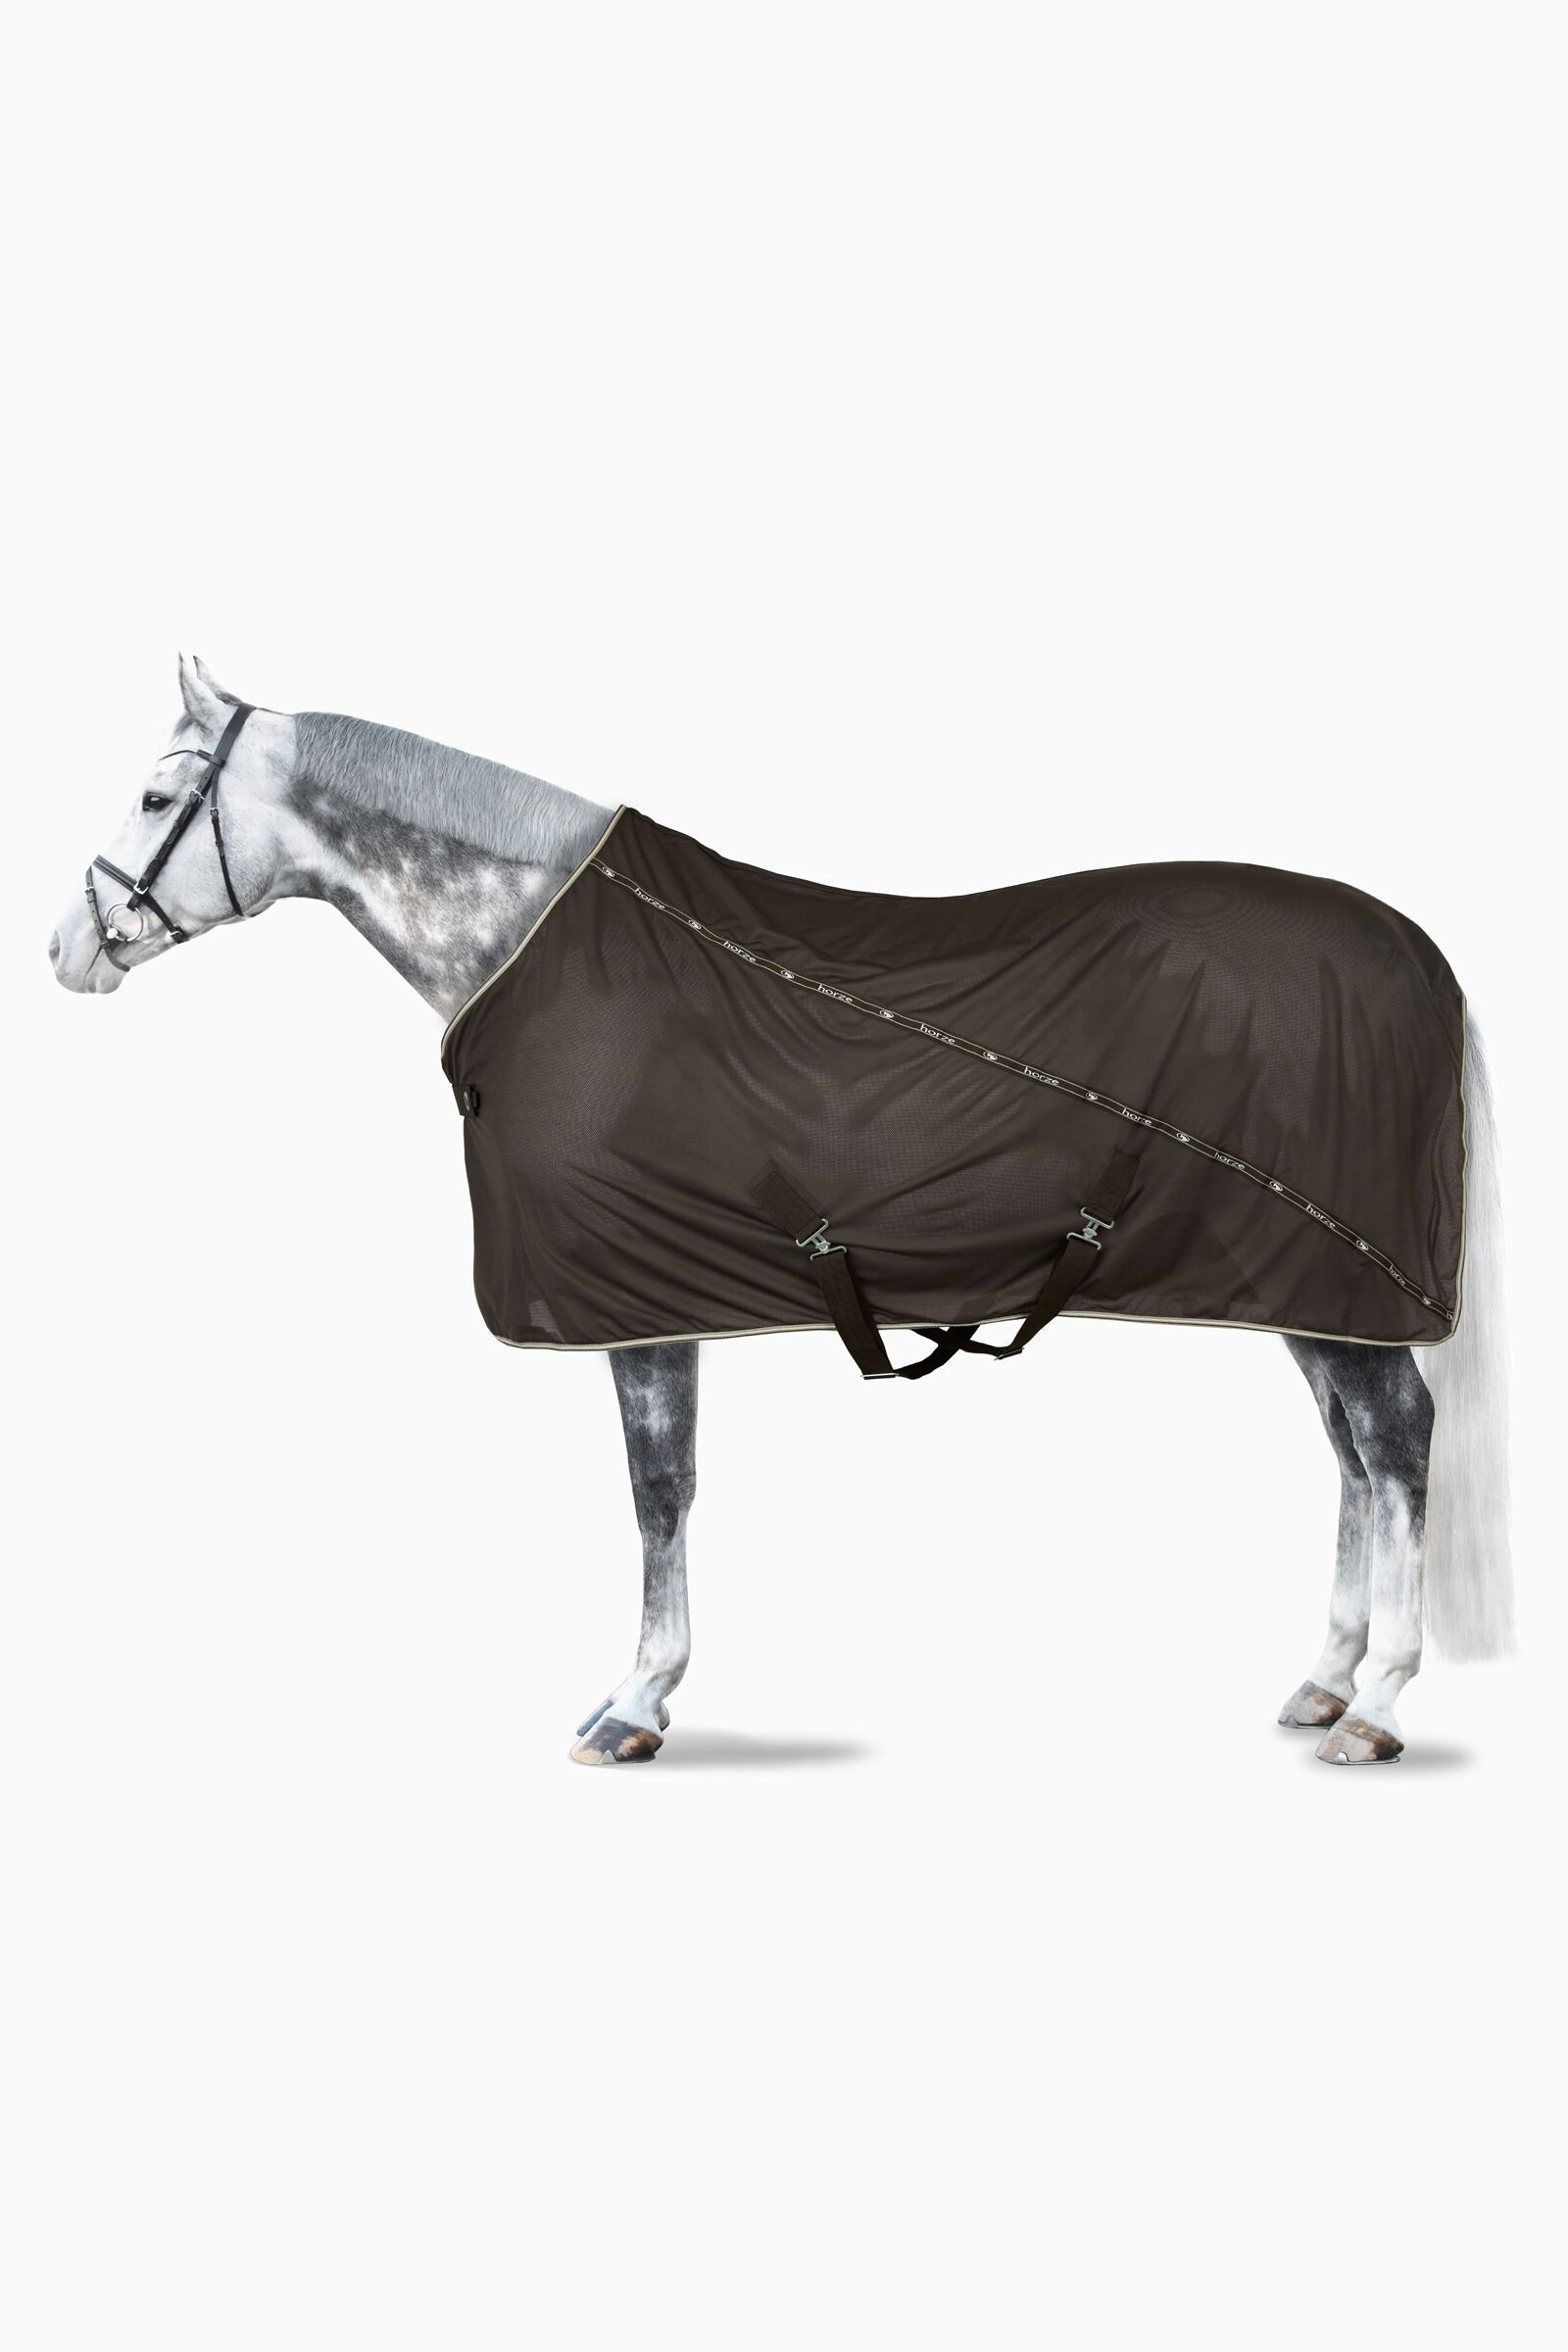 Strapazierfähiges Fliegentuch für Pferde Bauchschutz, atmungsaktiv 